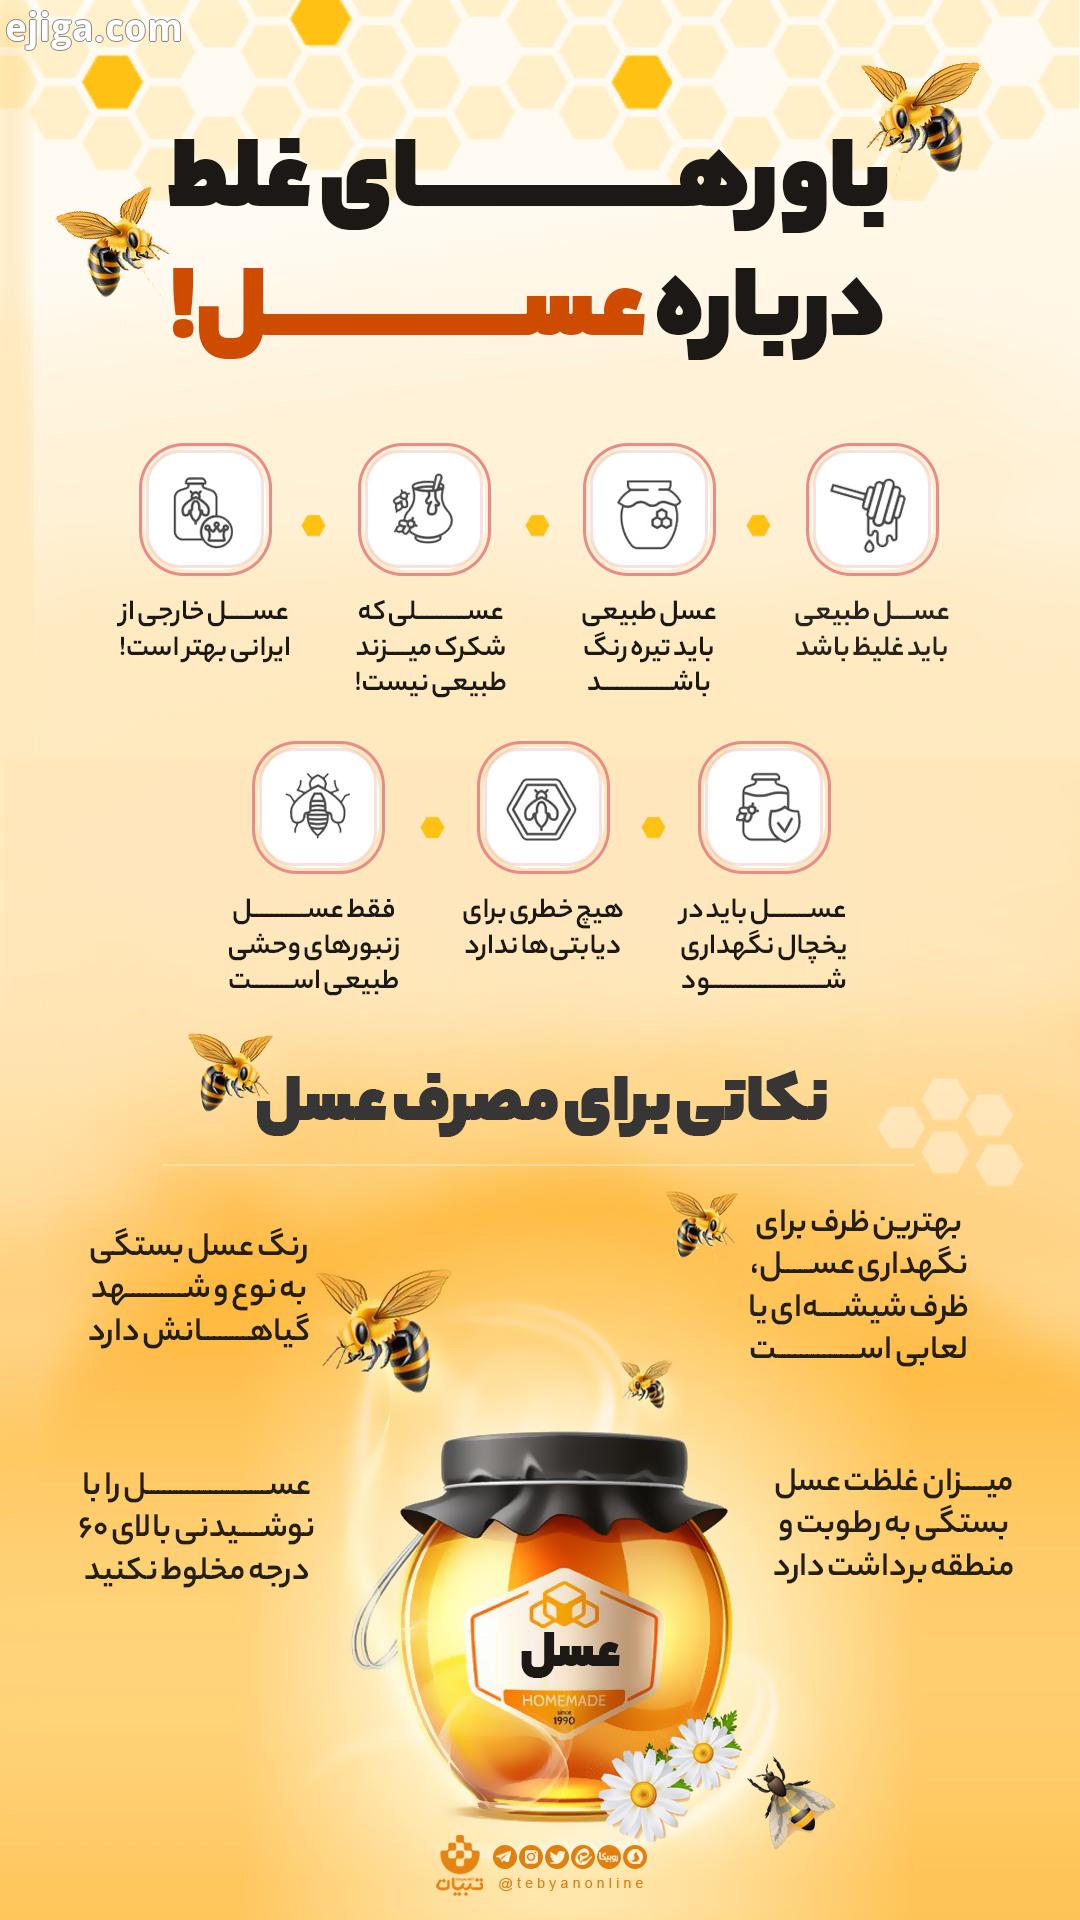 باورهای غلط درباره عسل - اینفوگرافی